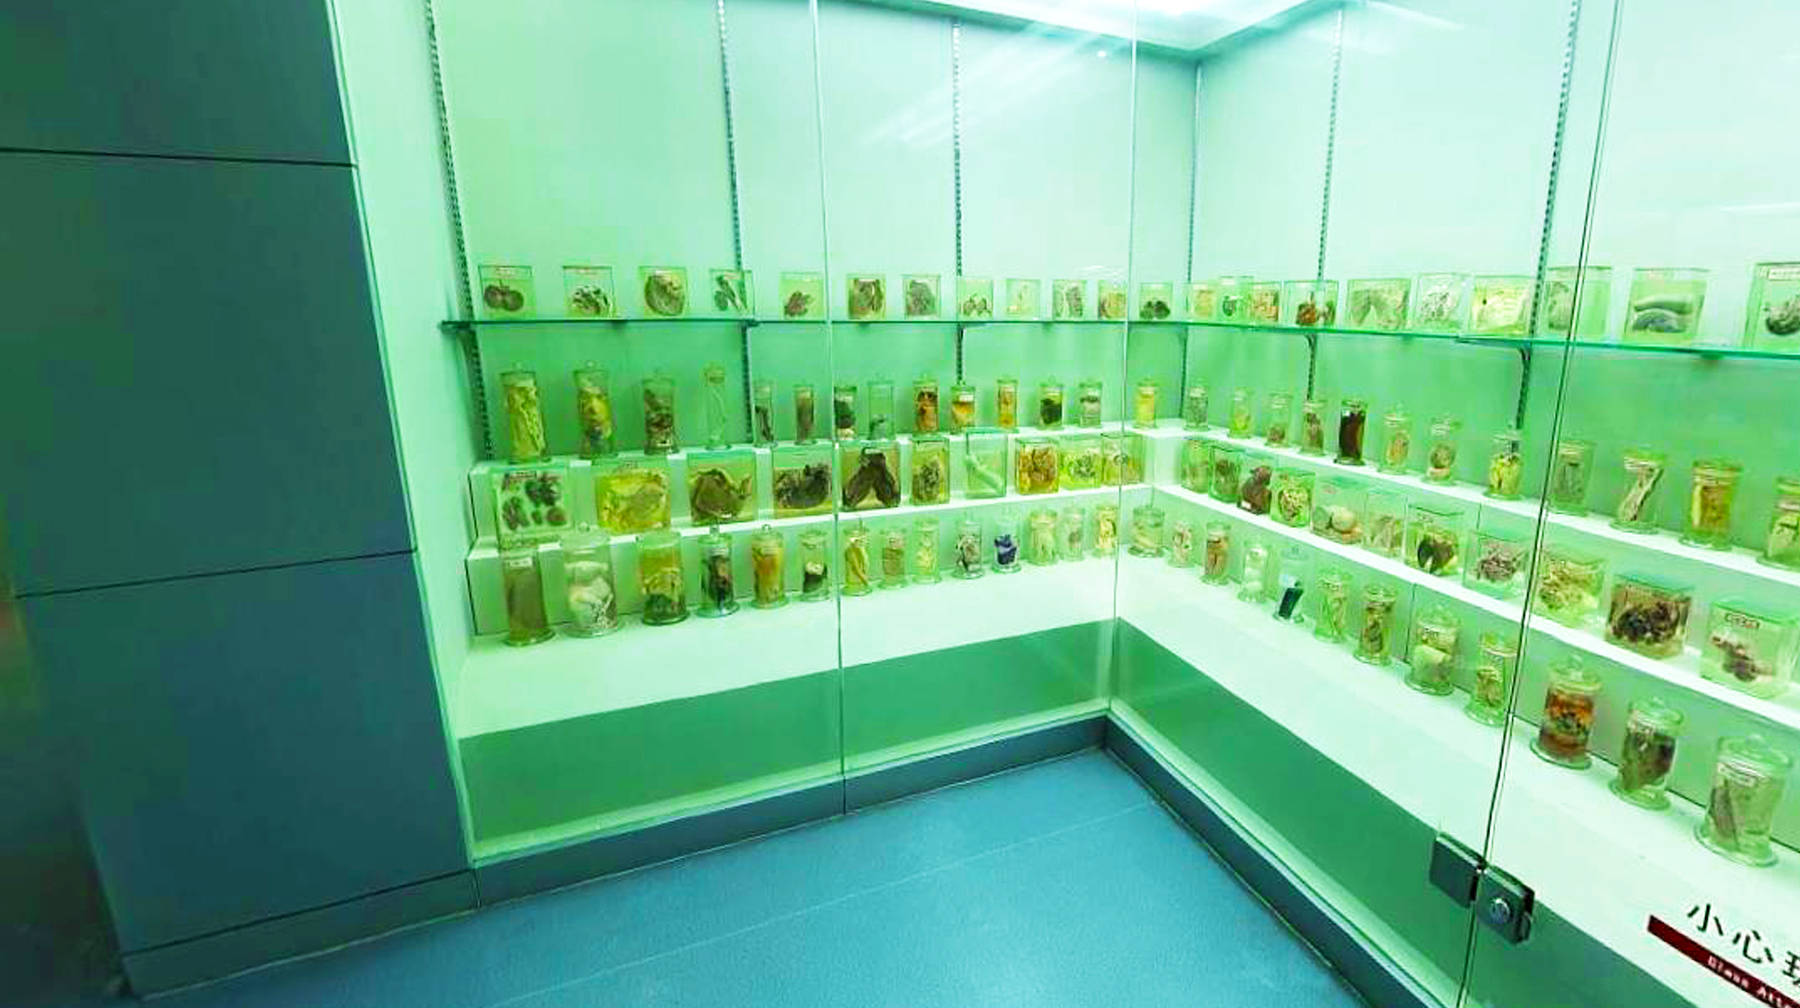 武汉城区高校里有座博物馆,收藏30万份标本,宛若动植物王国